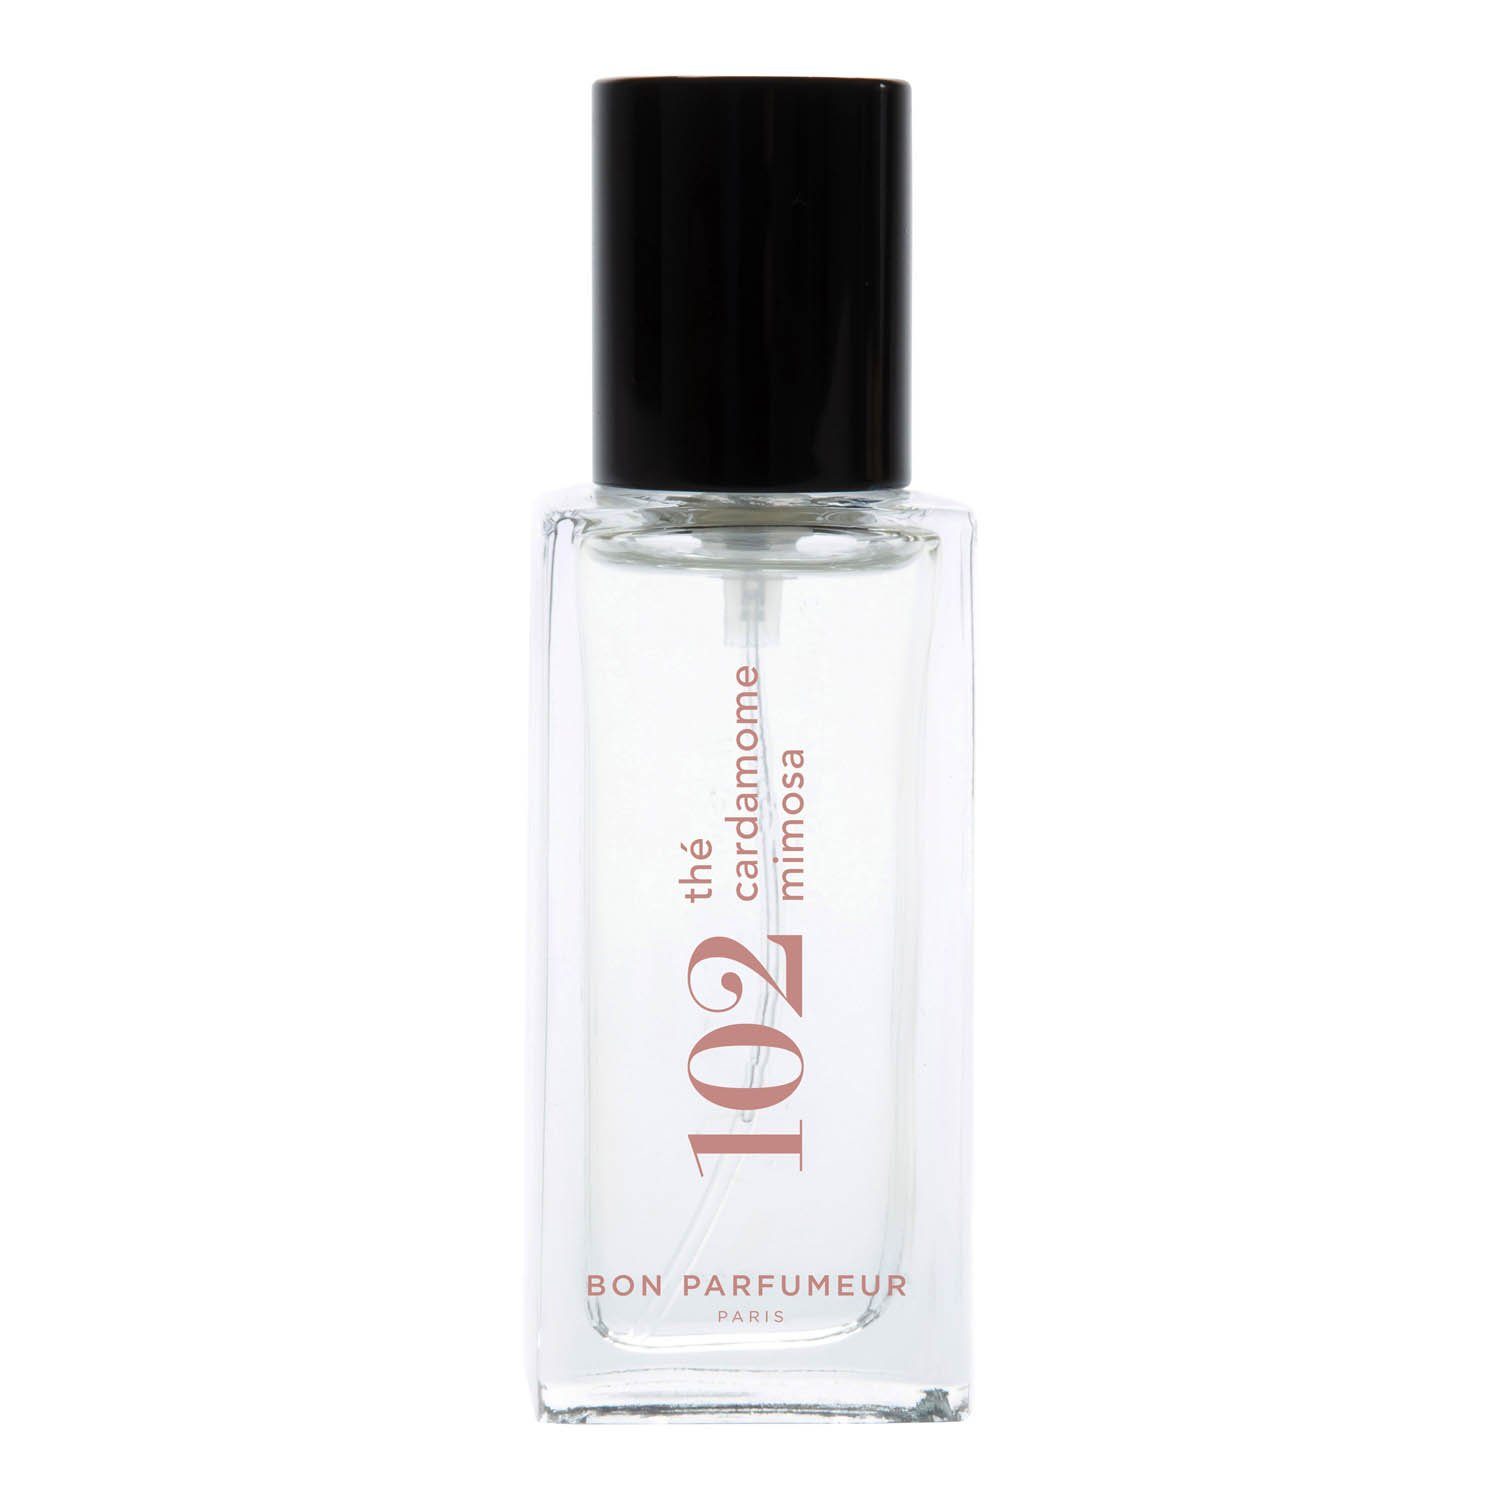 Bon Parfumeur Eau de Parfum 102 15 ml